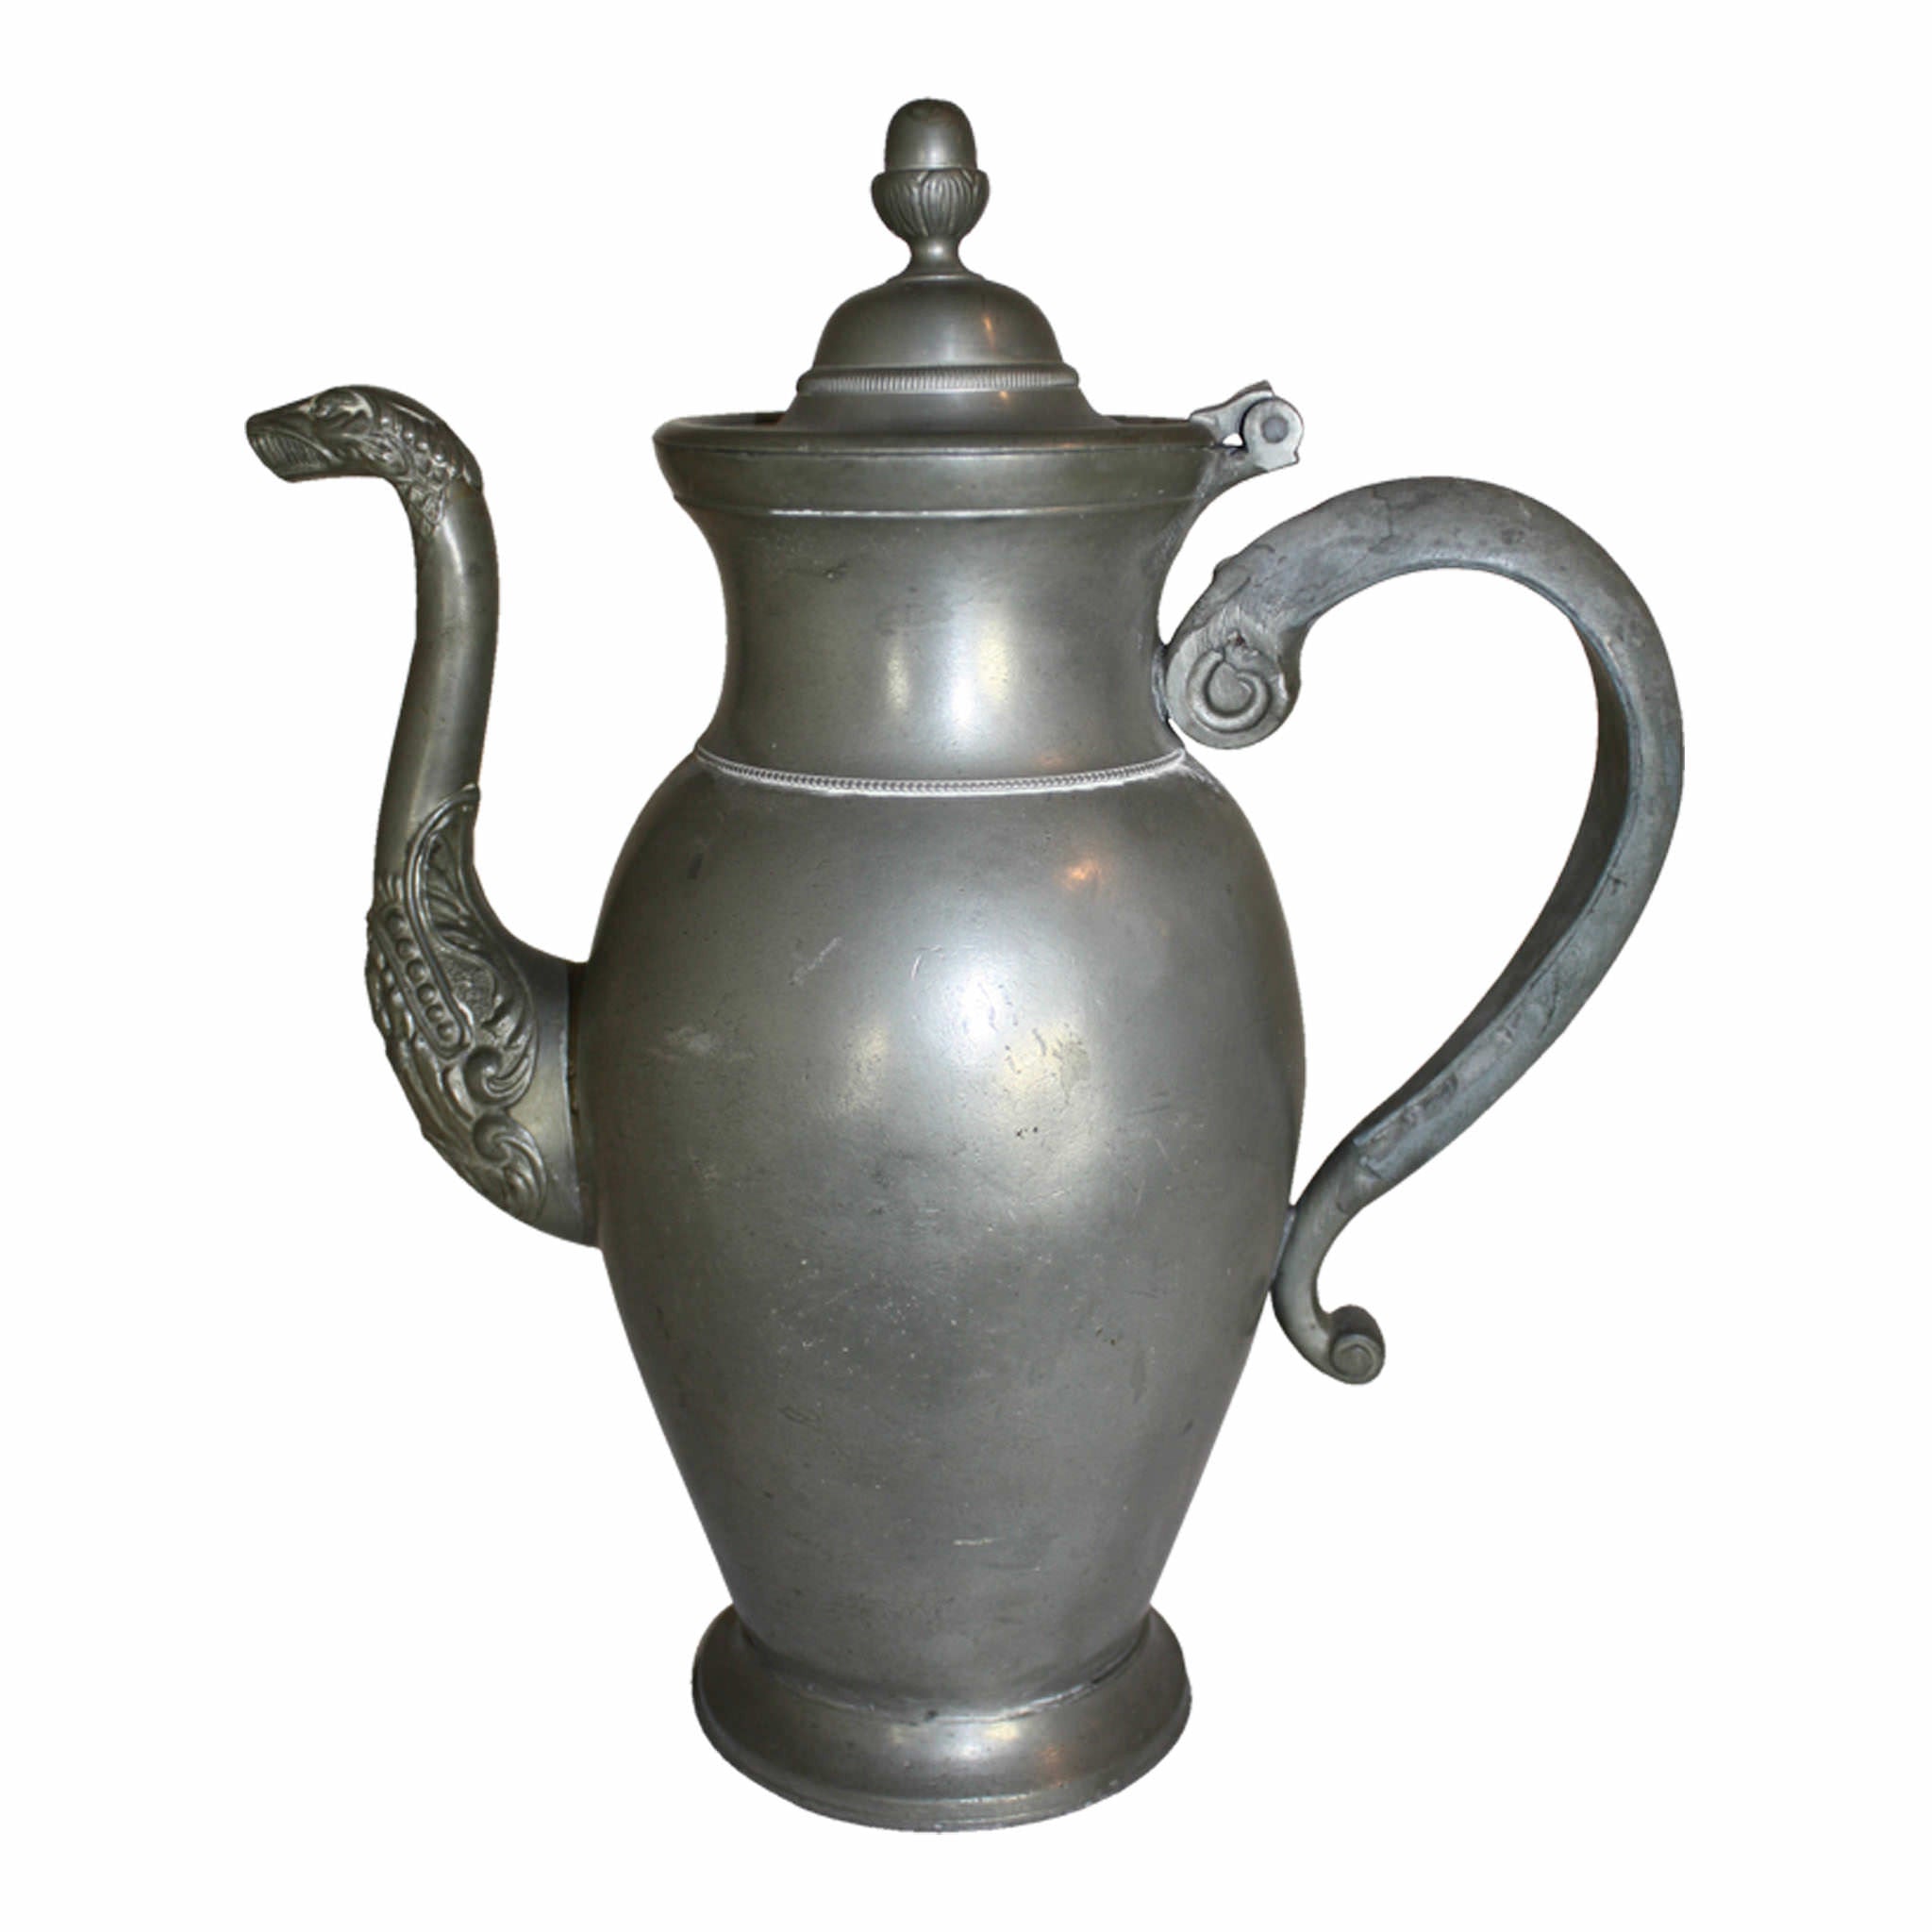 Flemish Pewter Teapot